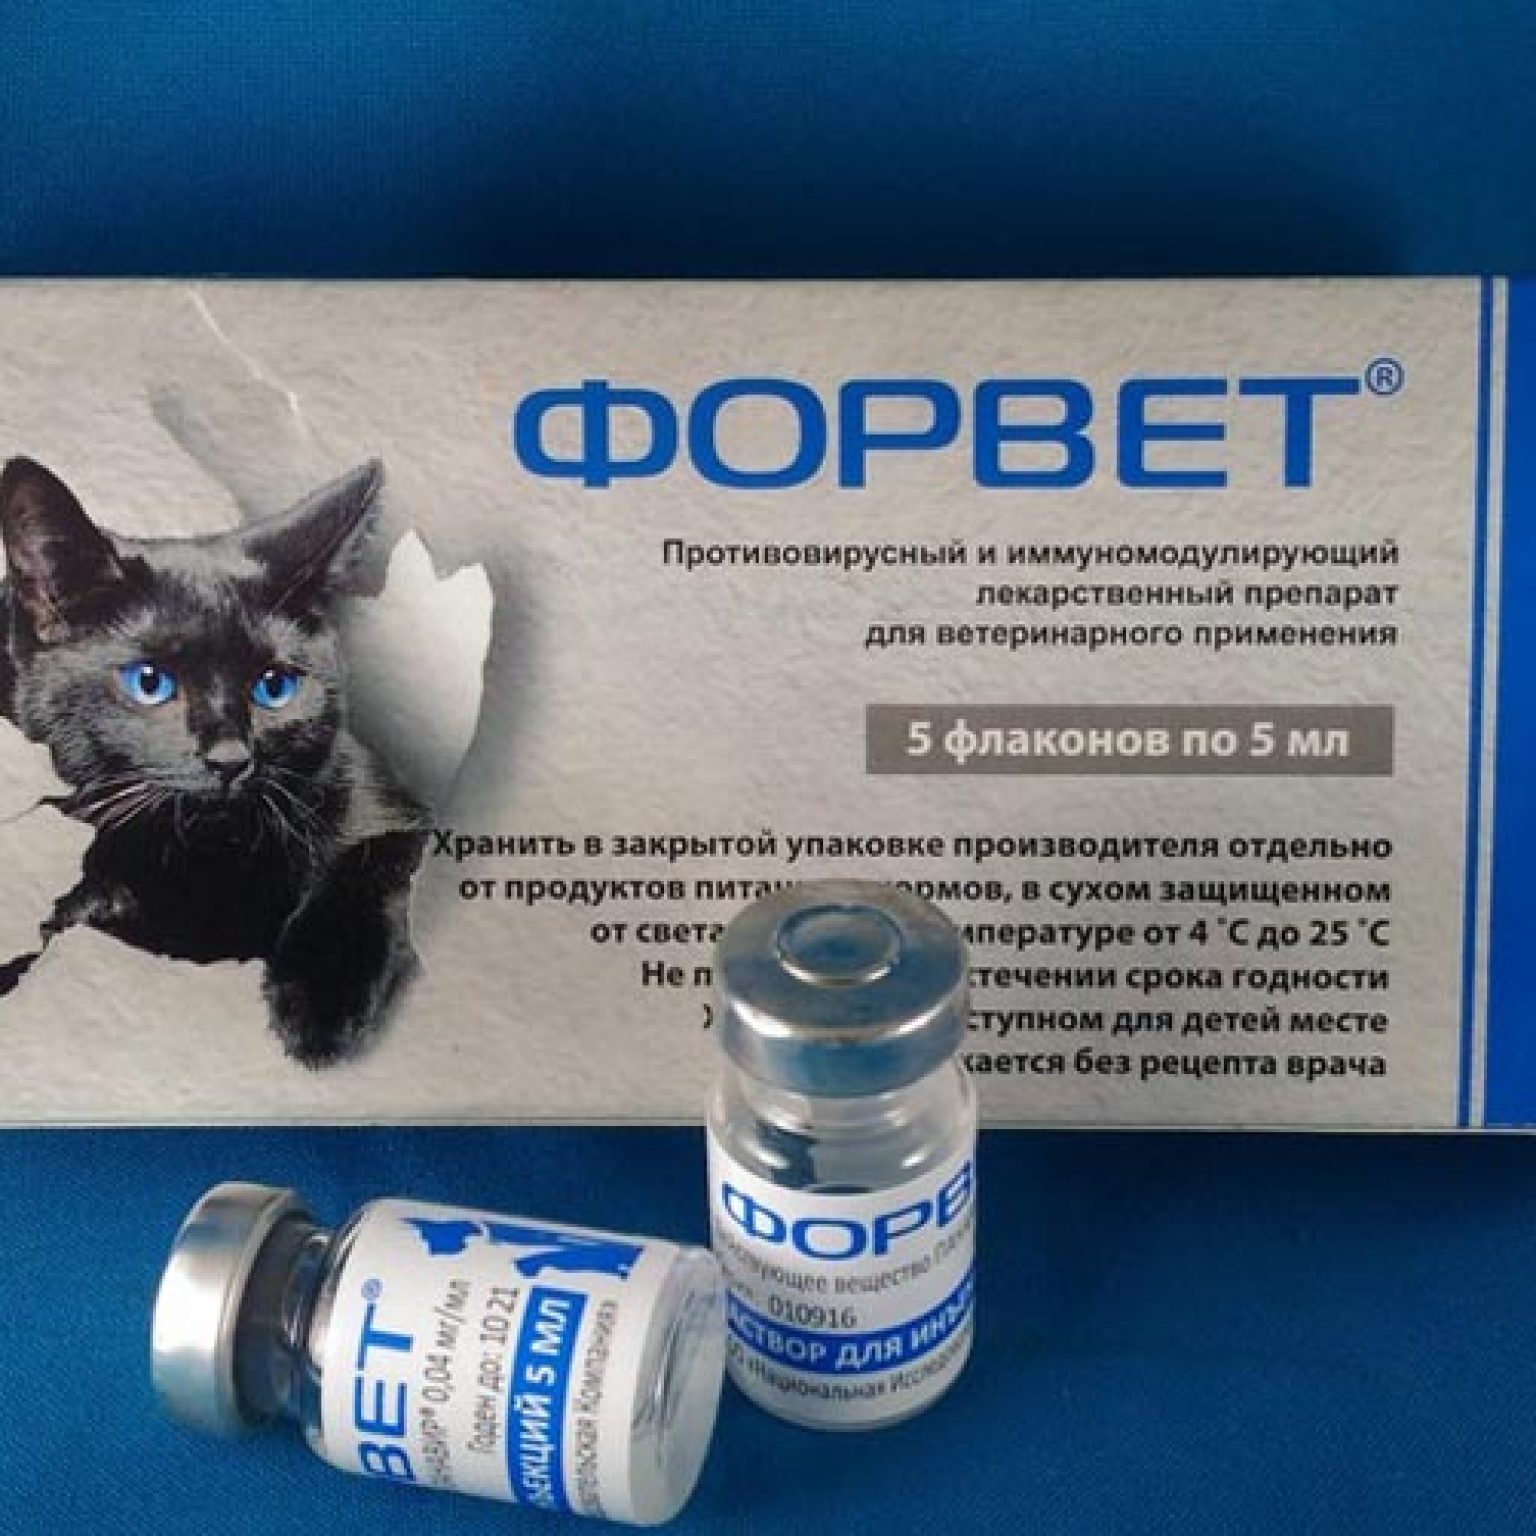 Кошка после антибиотиков. Форвет для кошек. Лекарственные средства для животных. Форвет инъекции. Противовирусные препараты для кошек.